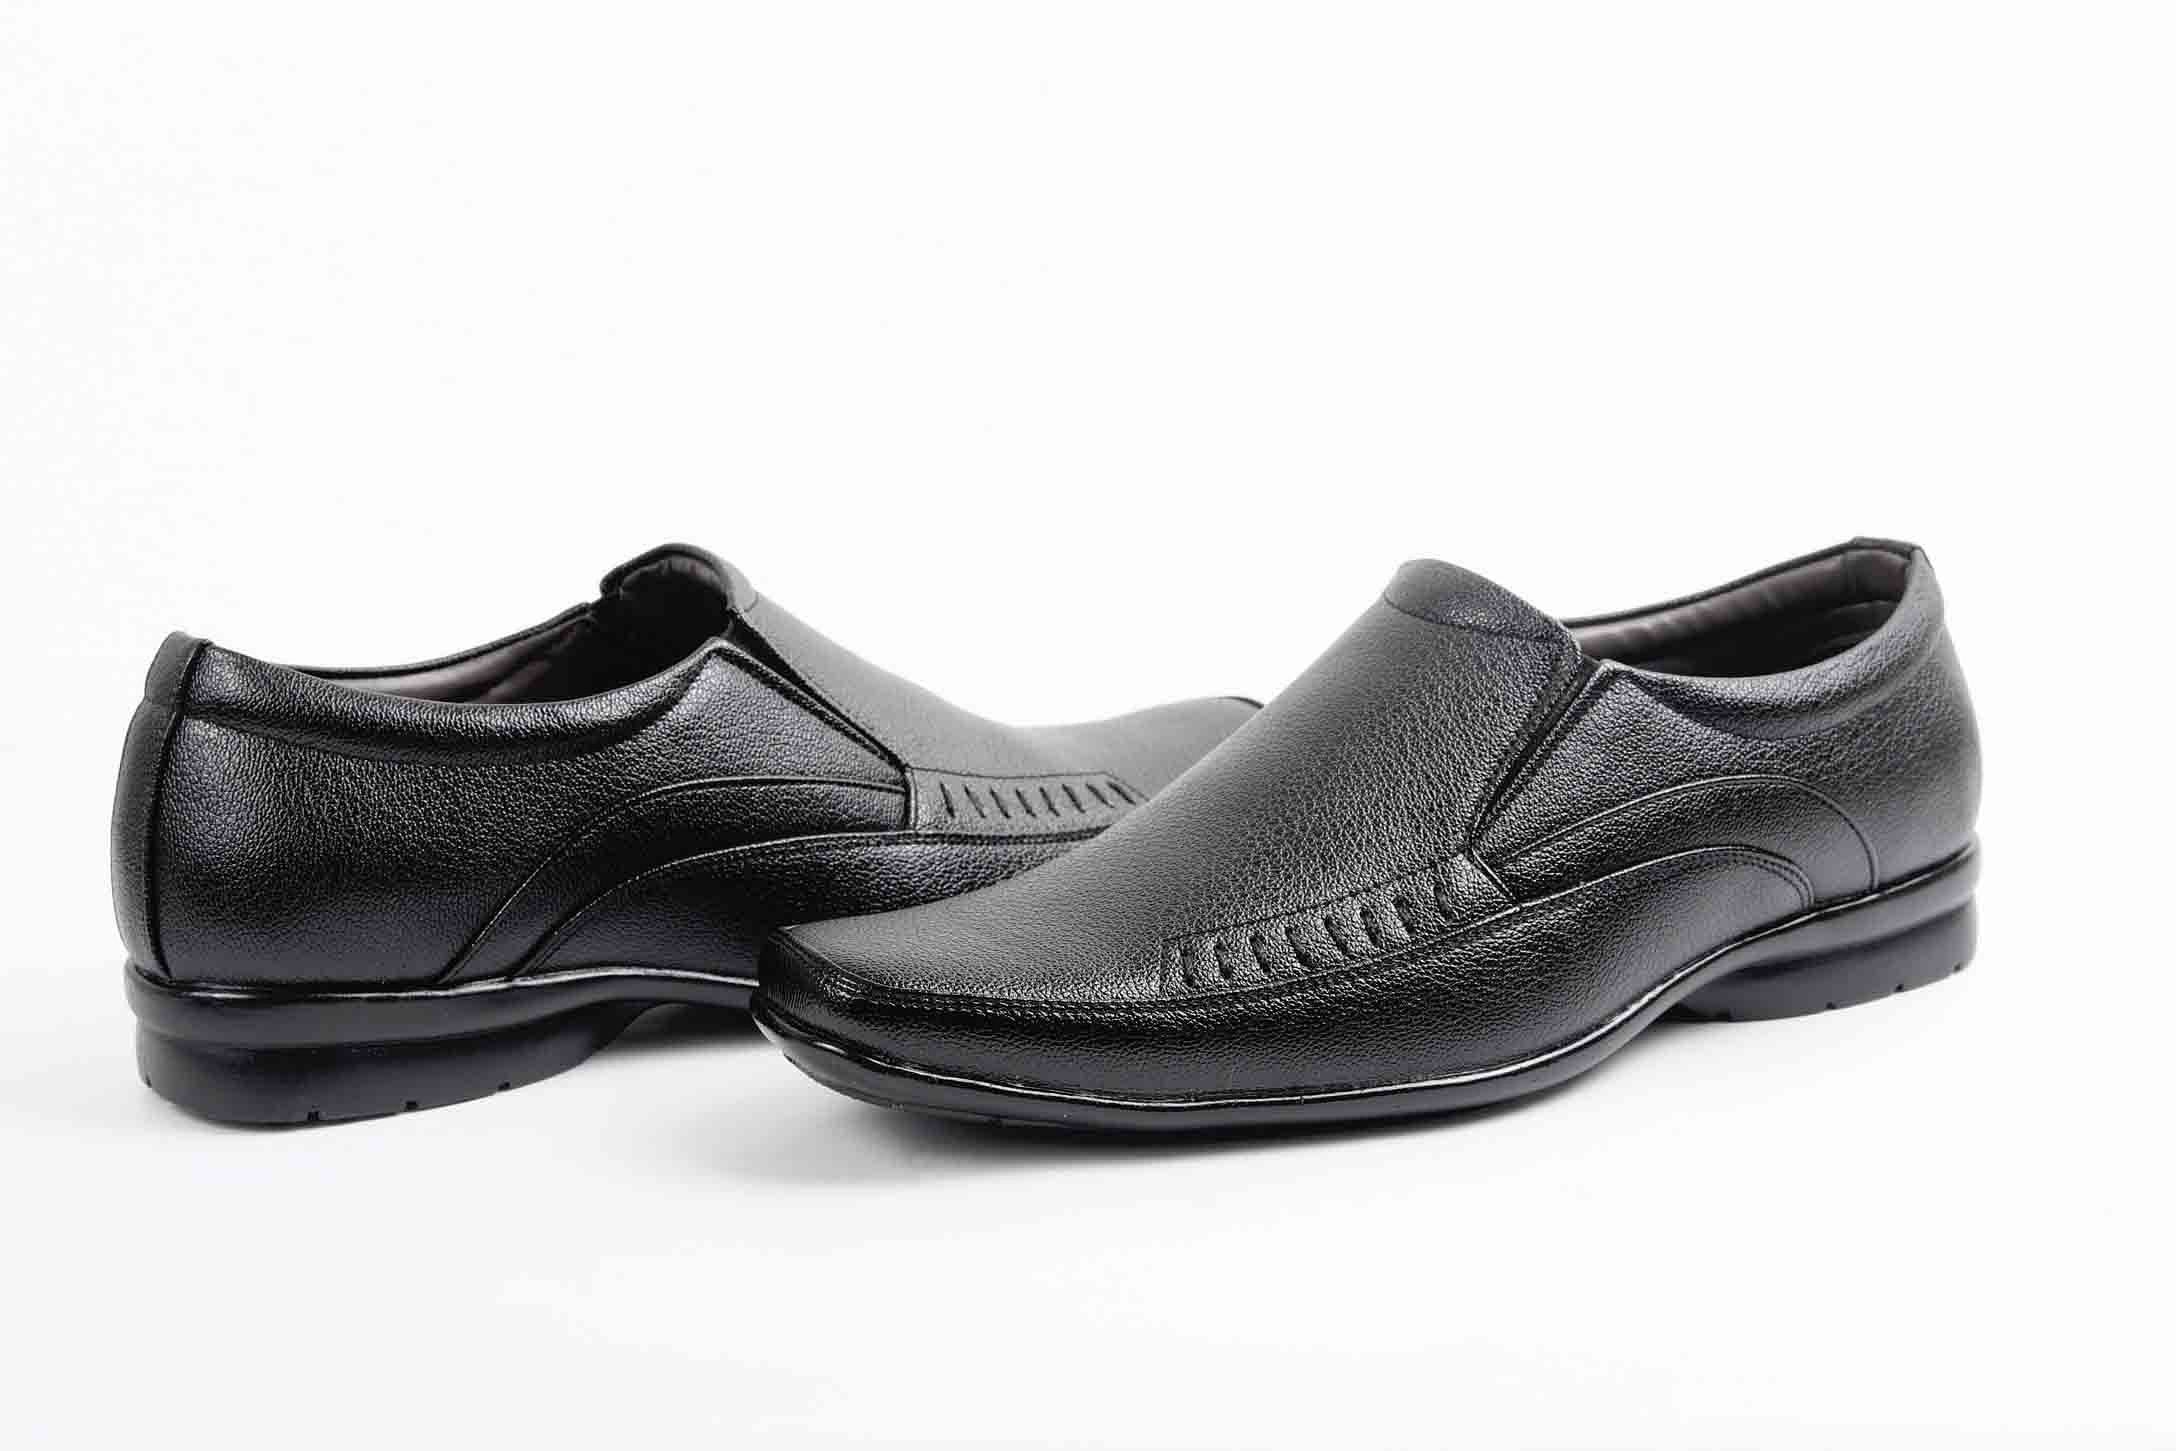 Pair-it Men moccasin Formal Shoes - Black LZ-RYDER106